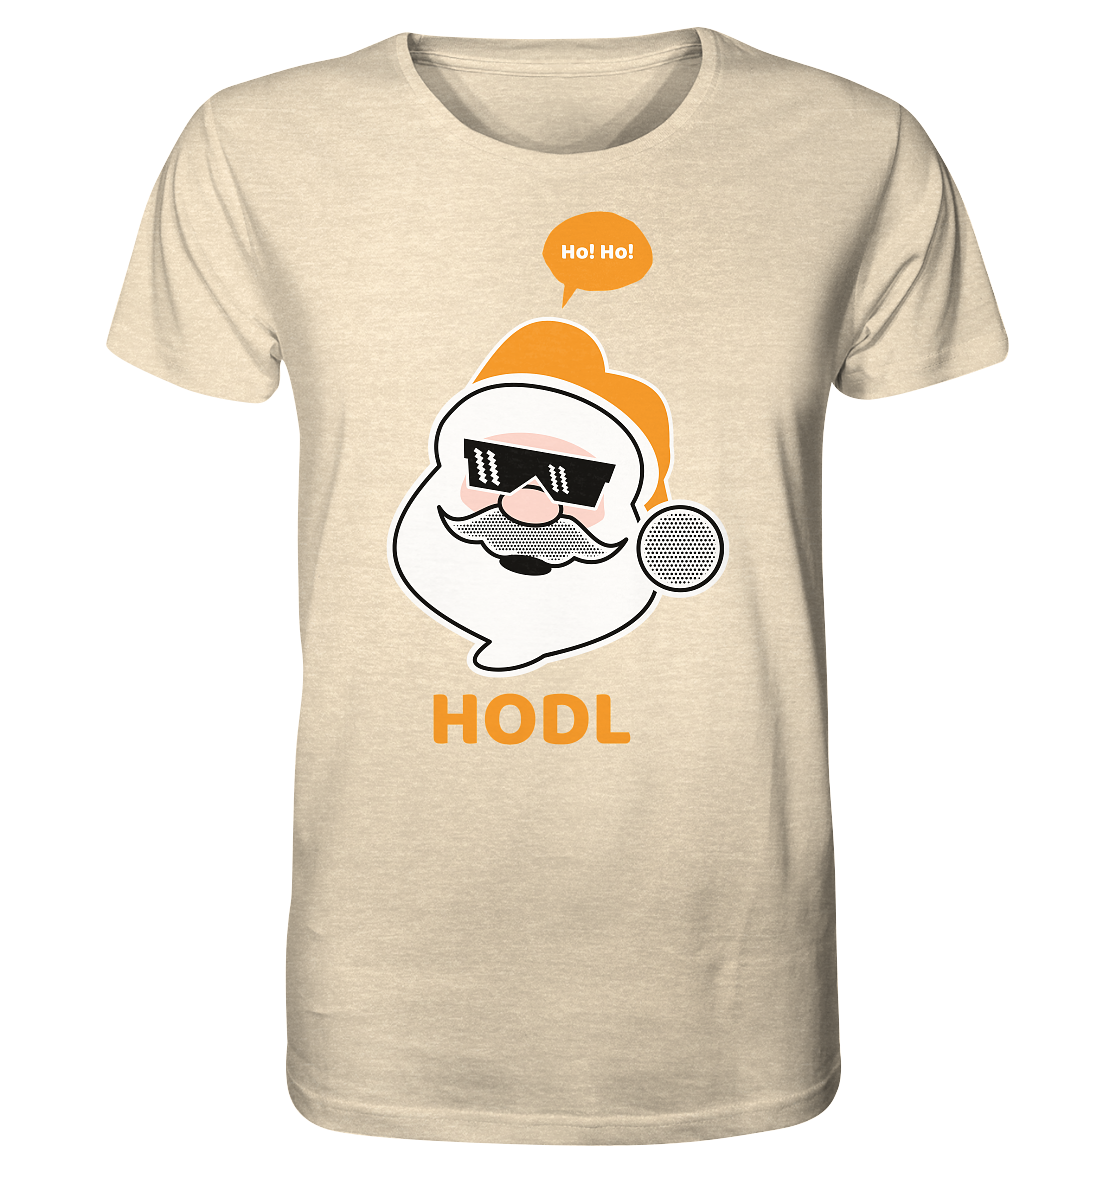 Bitcoin "Ho Ho Hodl" - Organic Shirt